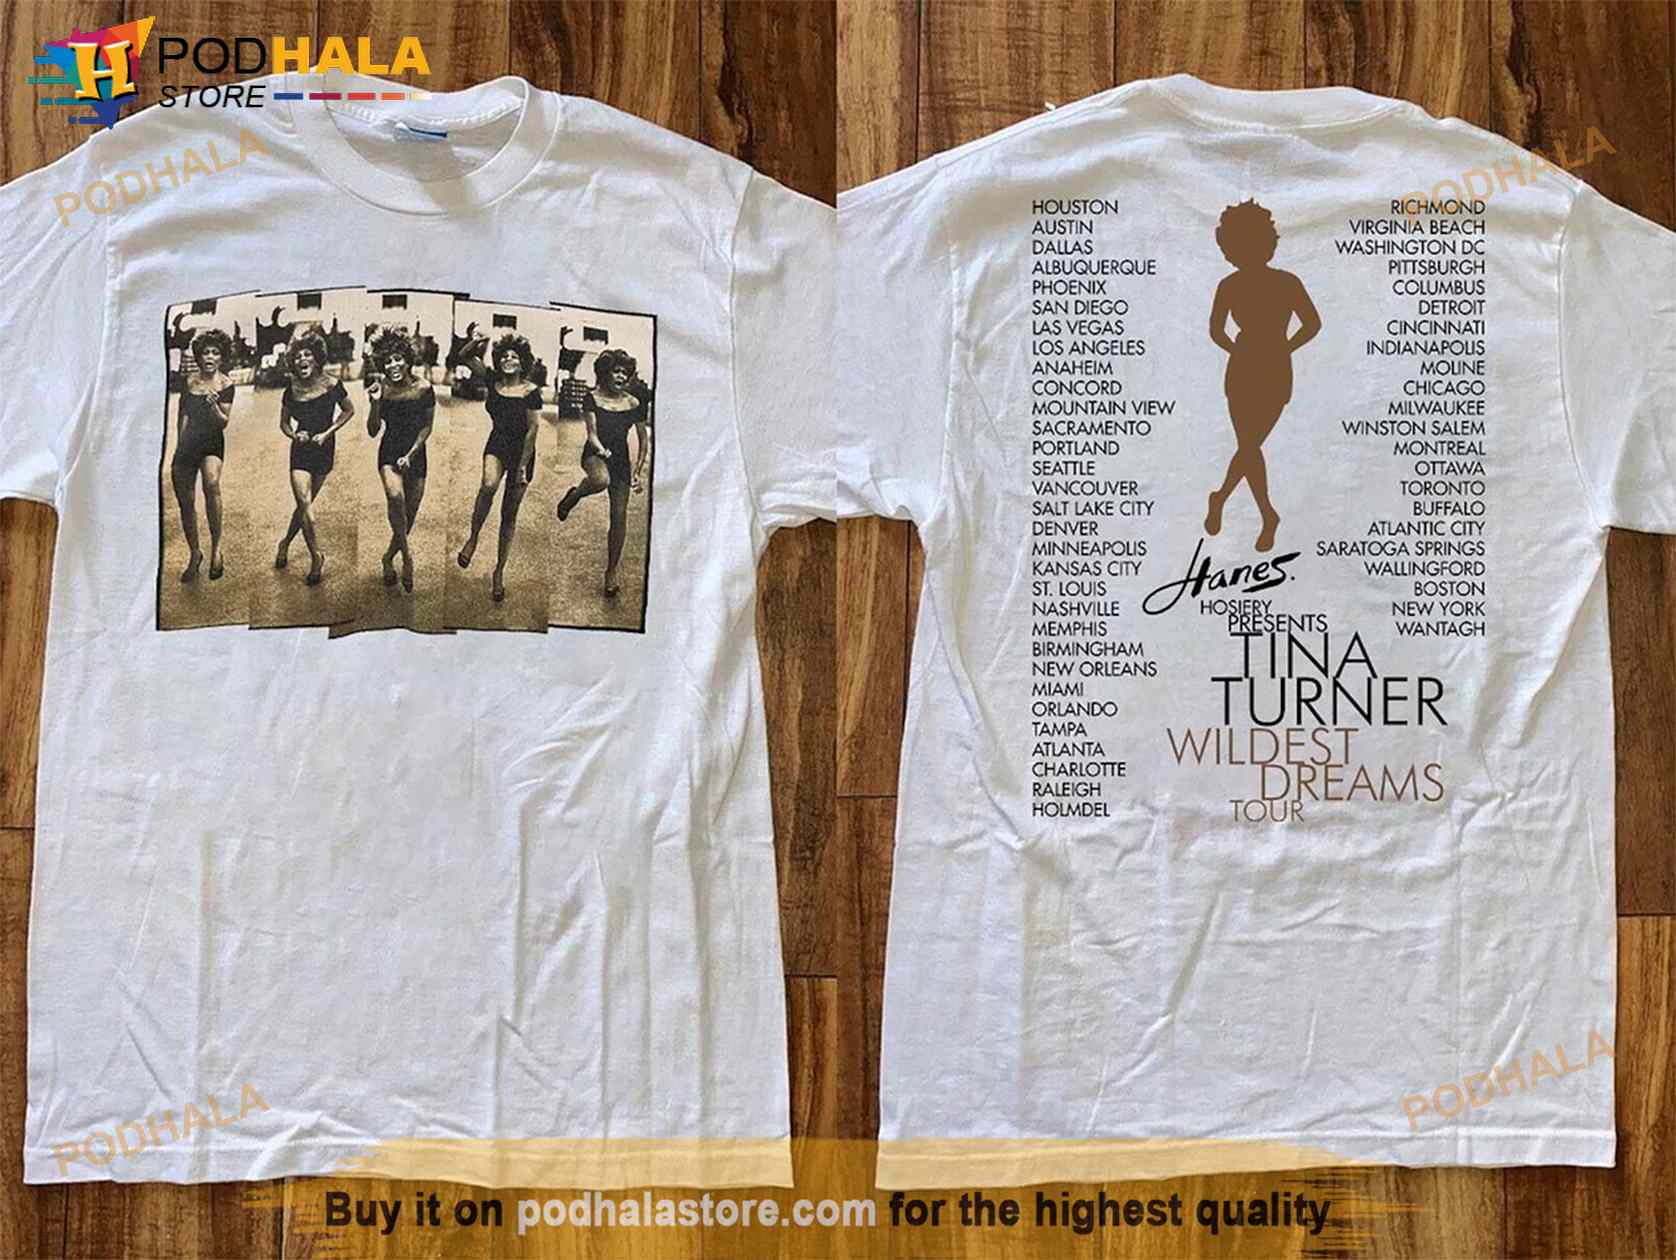 Tina Turner Tour 96 Shirt, Wildest Dreams Tour T-Shirt, 90s